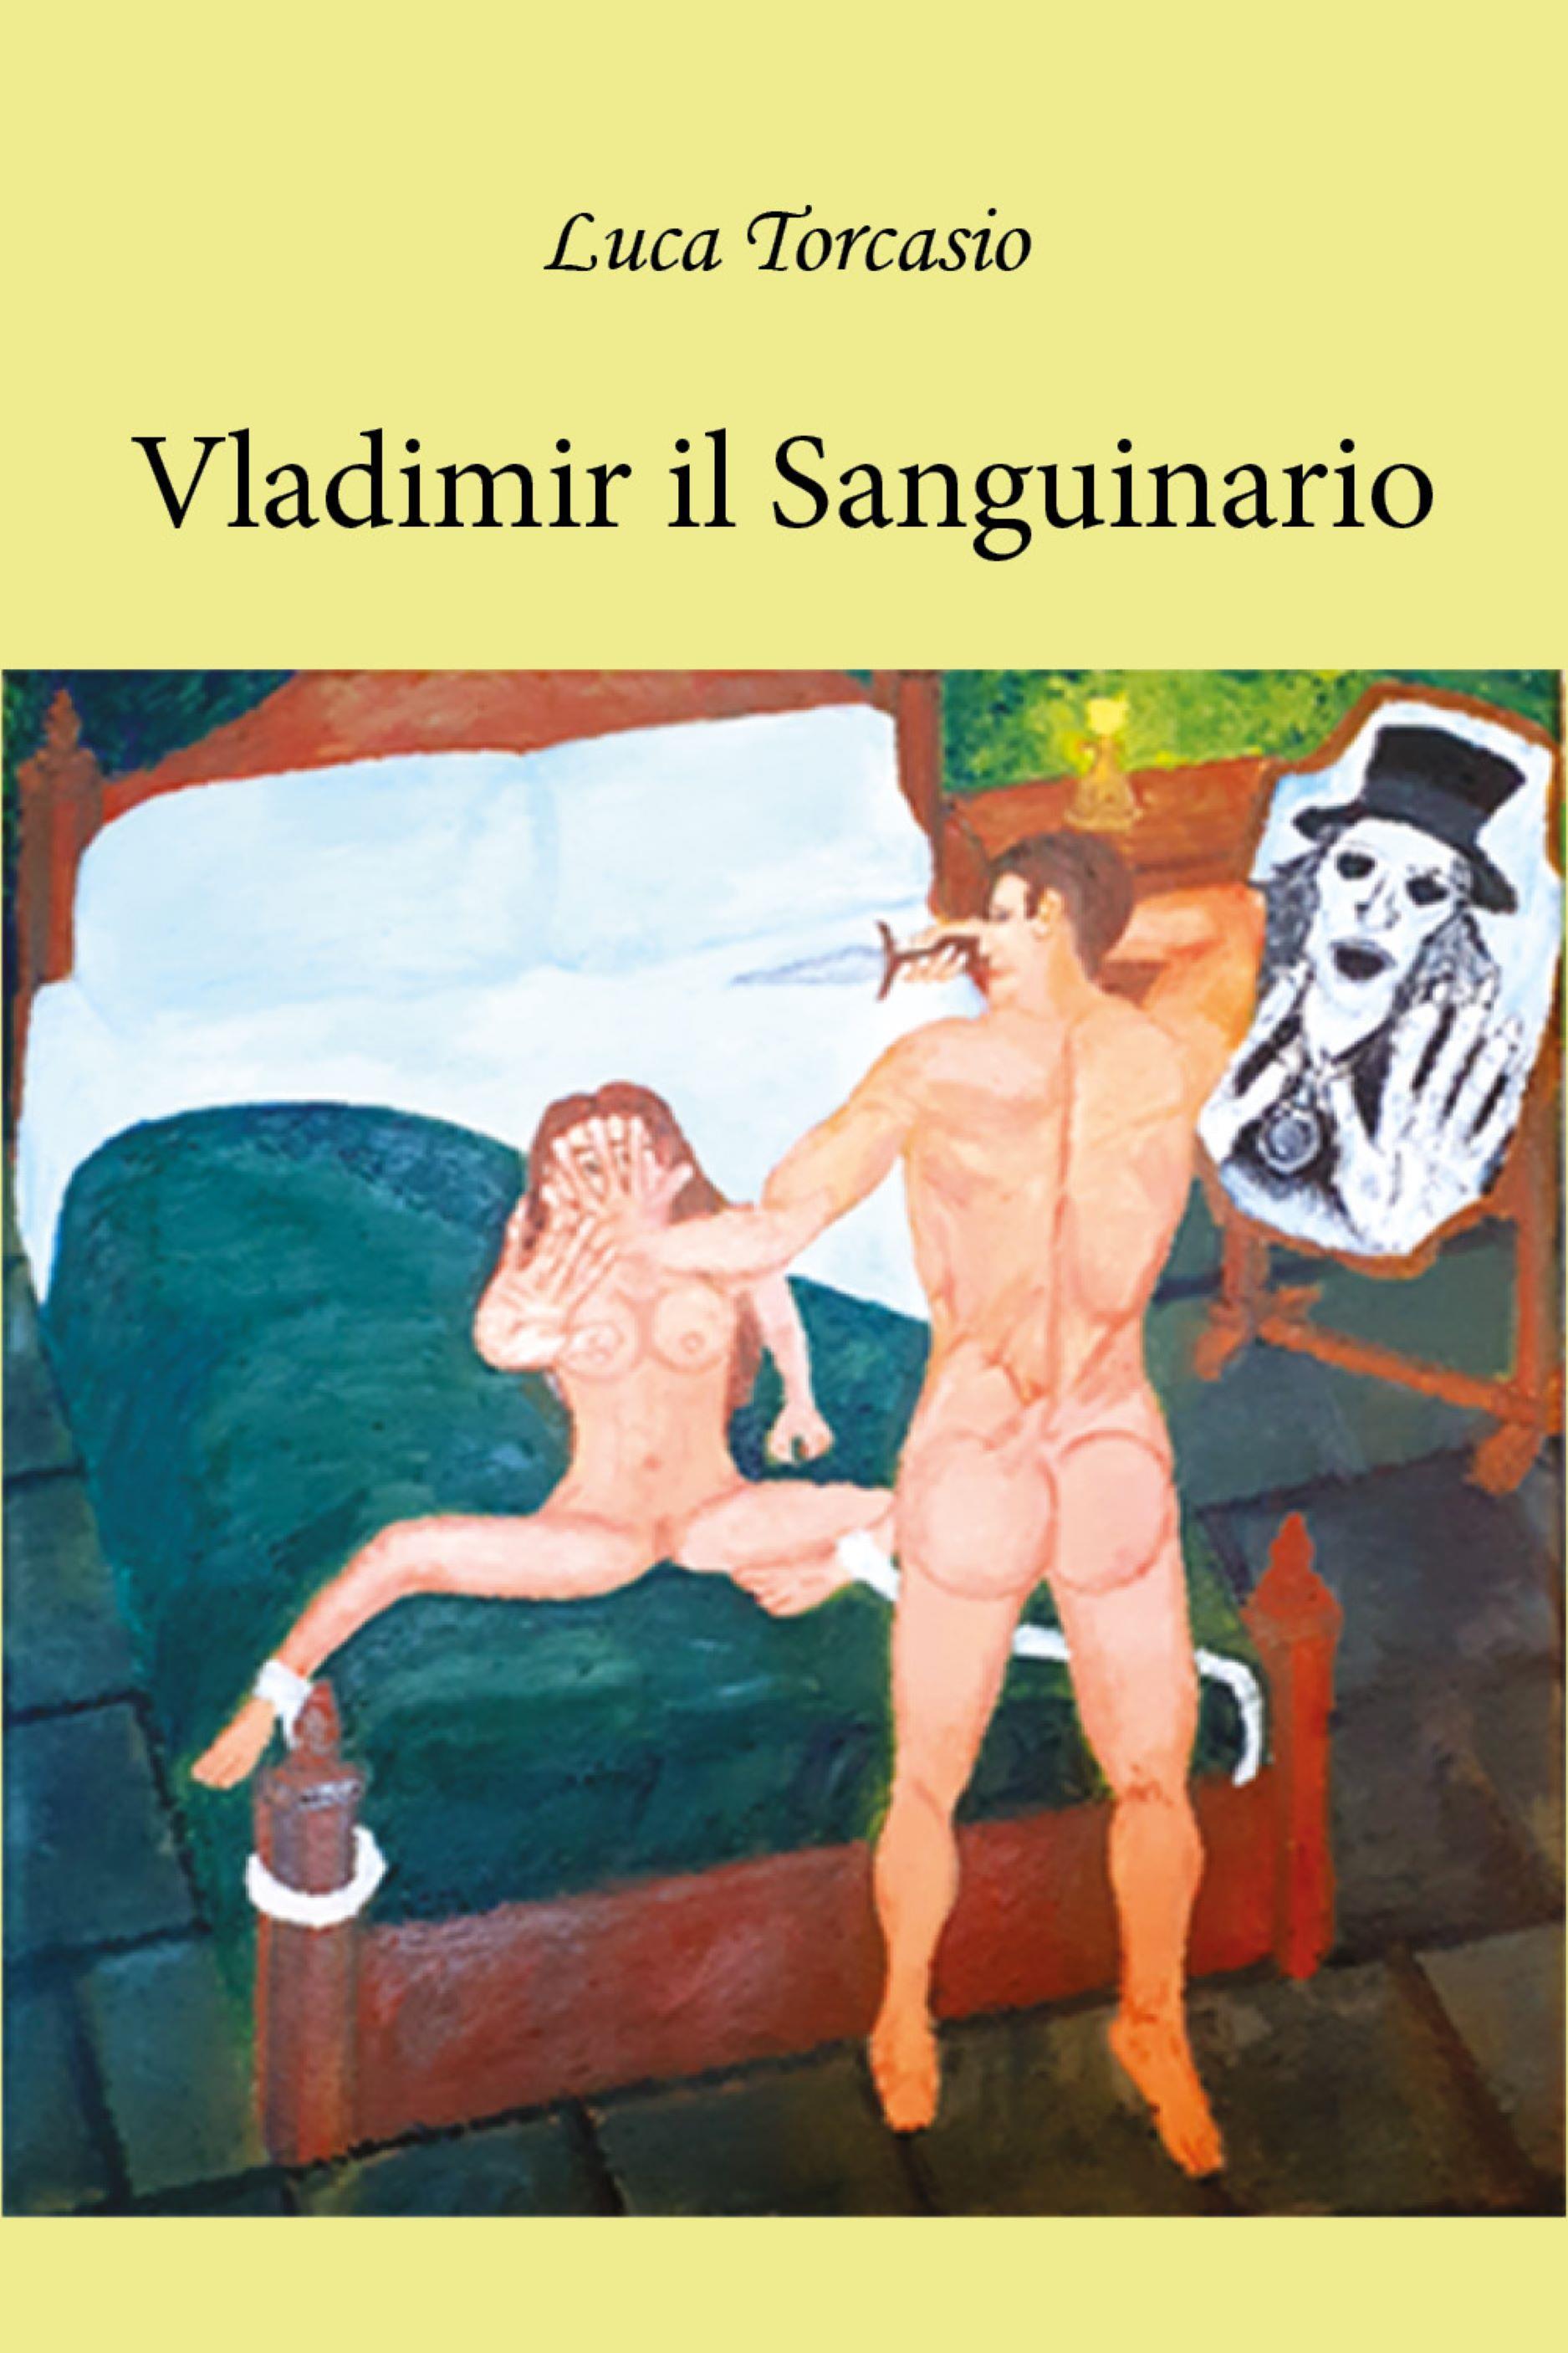 Vladimir il Sanguinario